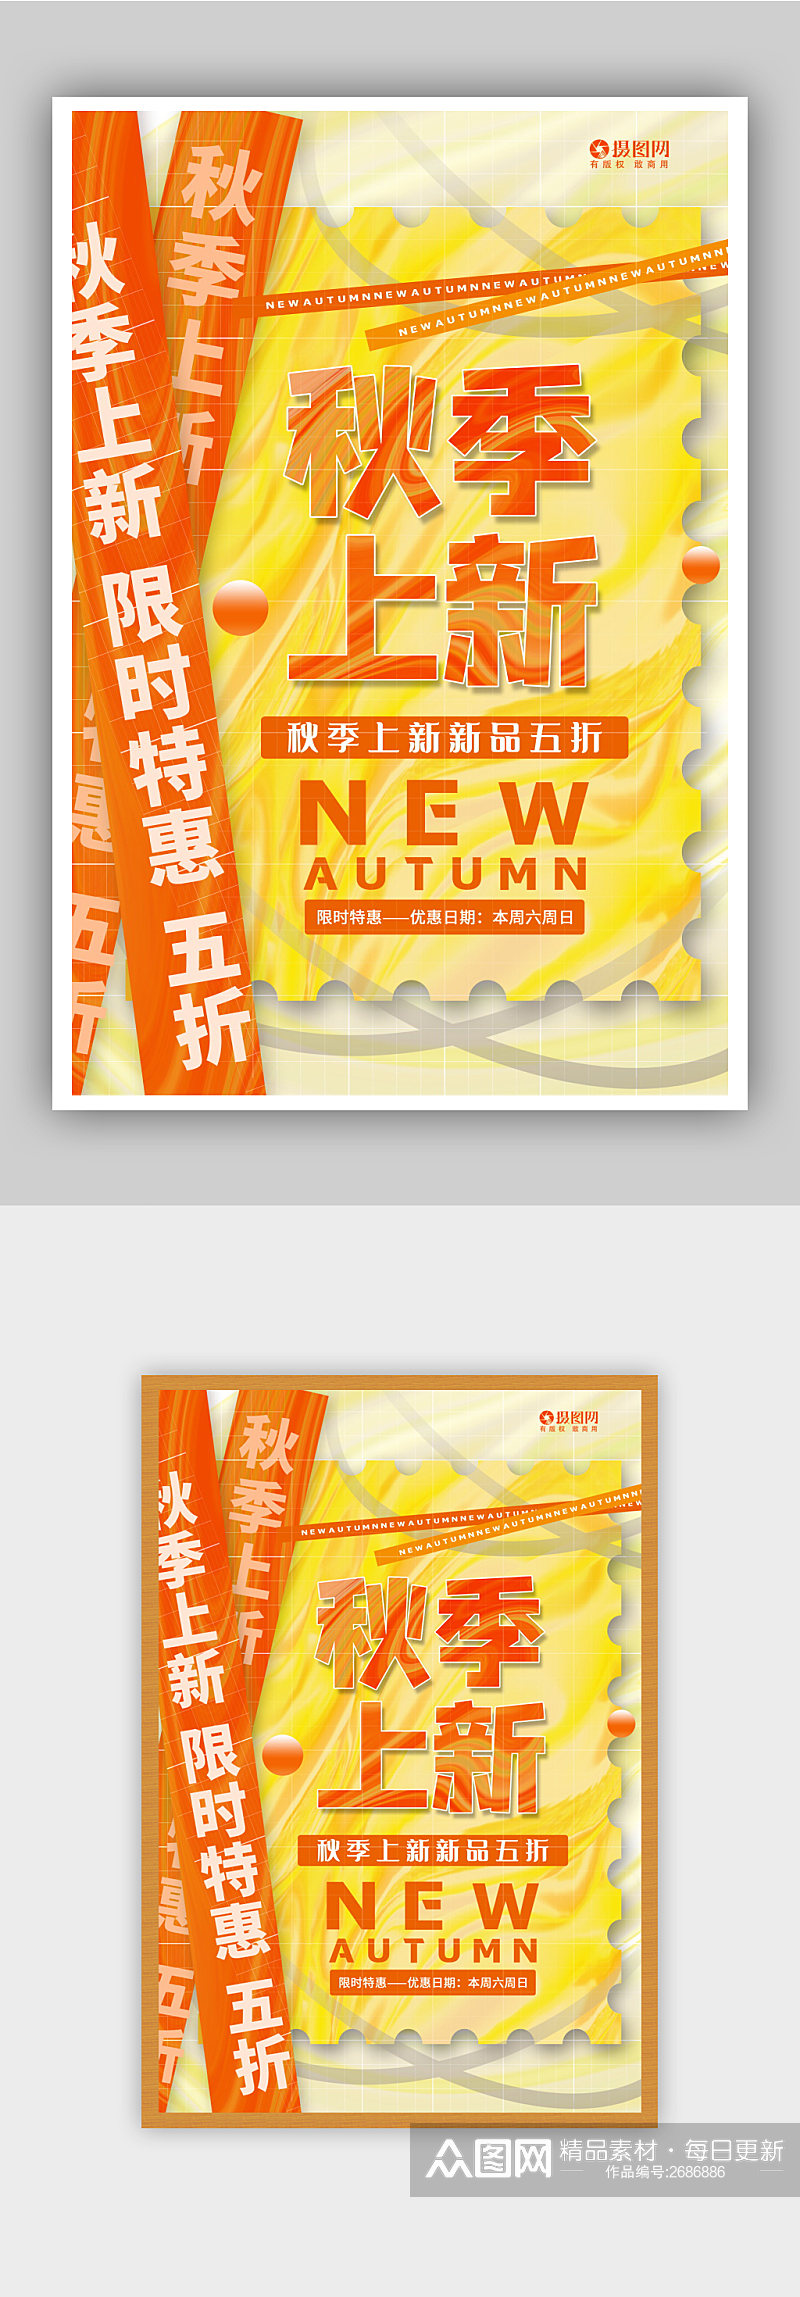 暖橙色酸性风秋季上新促销海报素材